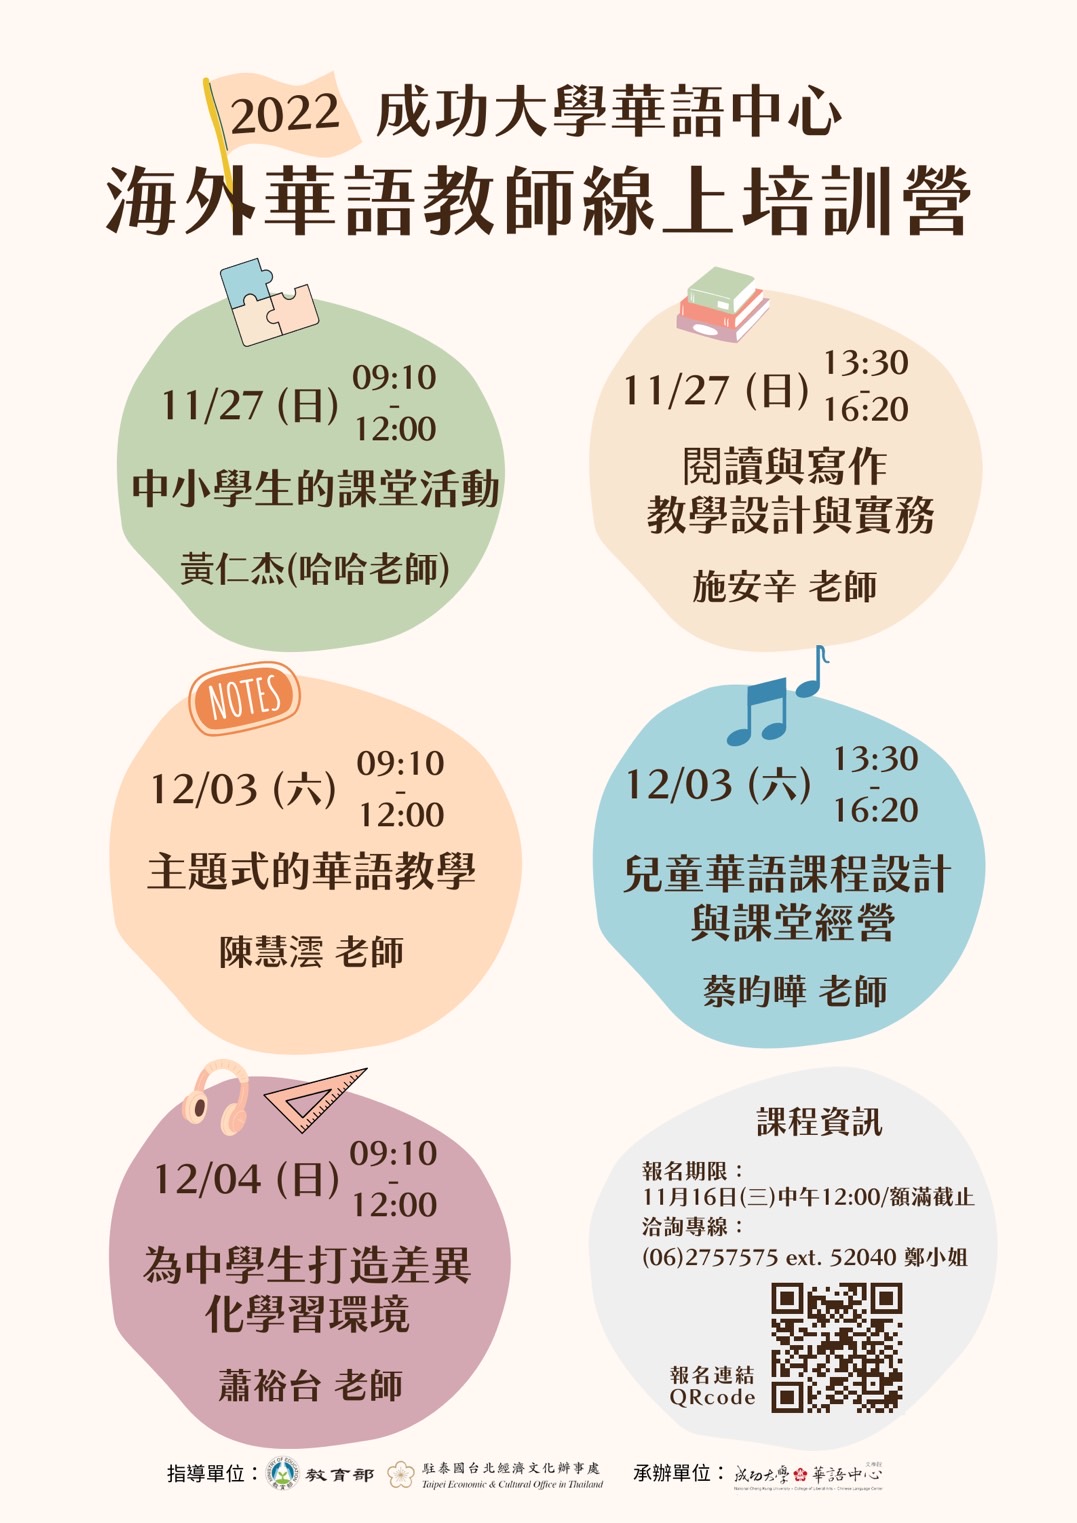 【11.11.2565】 ฝึกอบรมครูสอนภาษาจีนประจำปี 2565「2022海外華師線上培訓營」